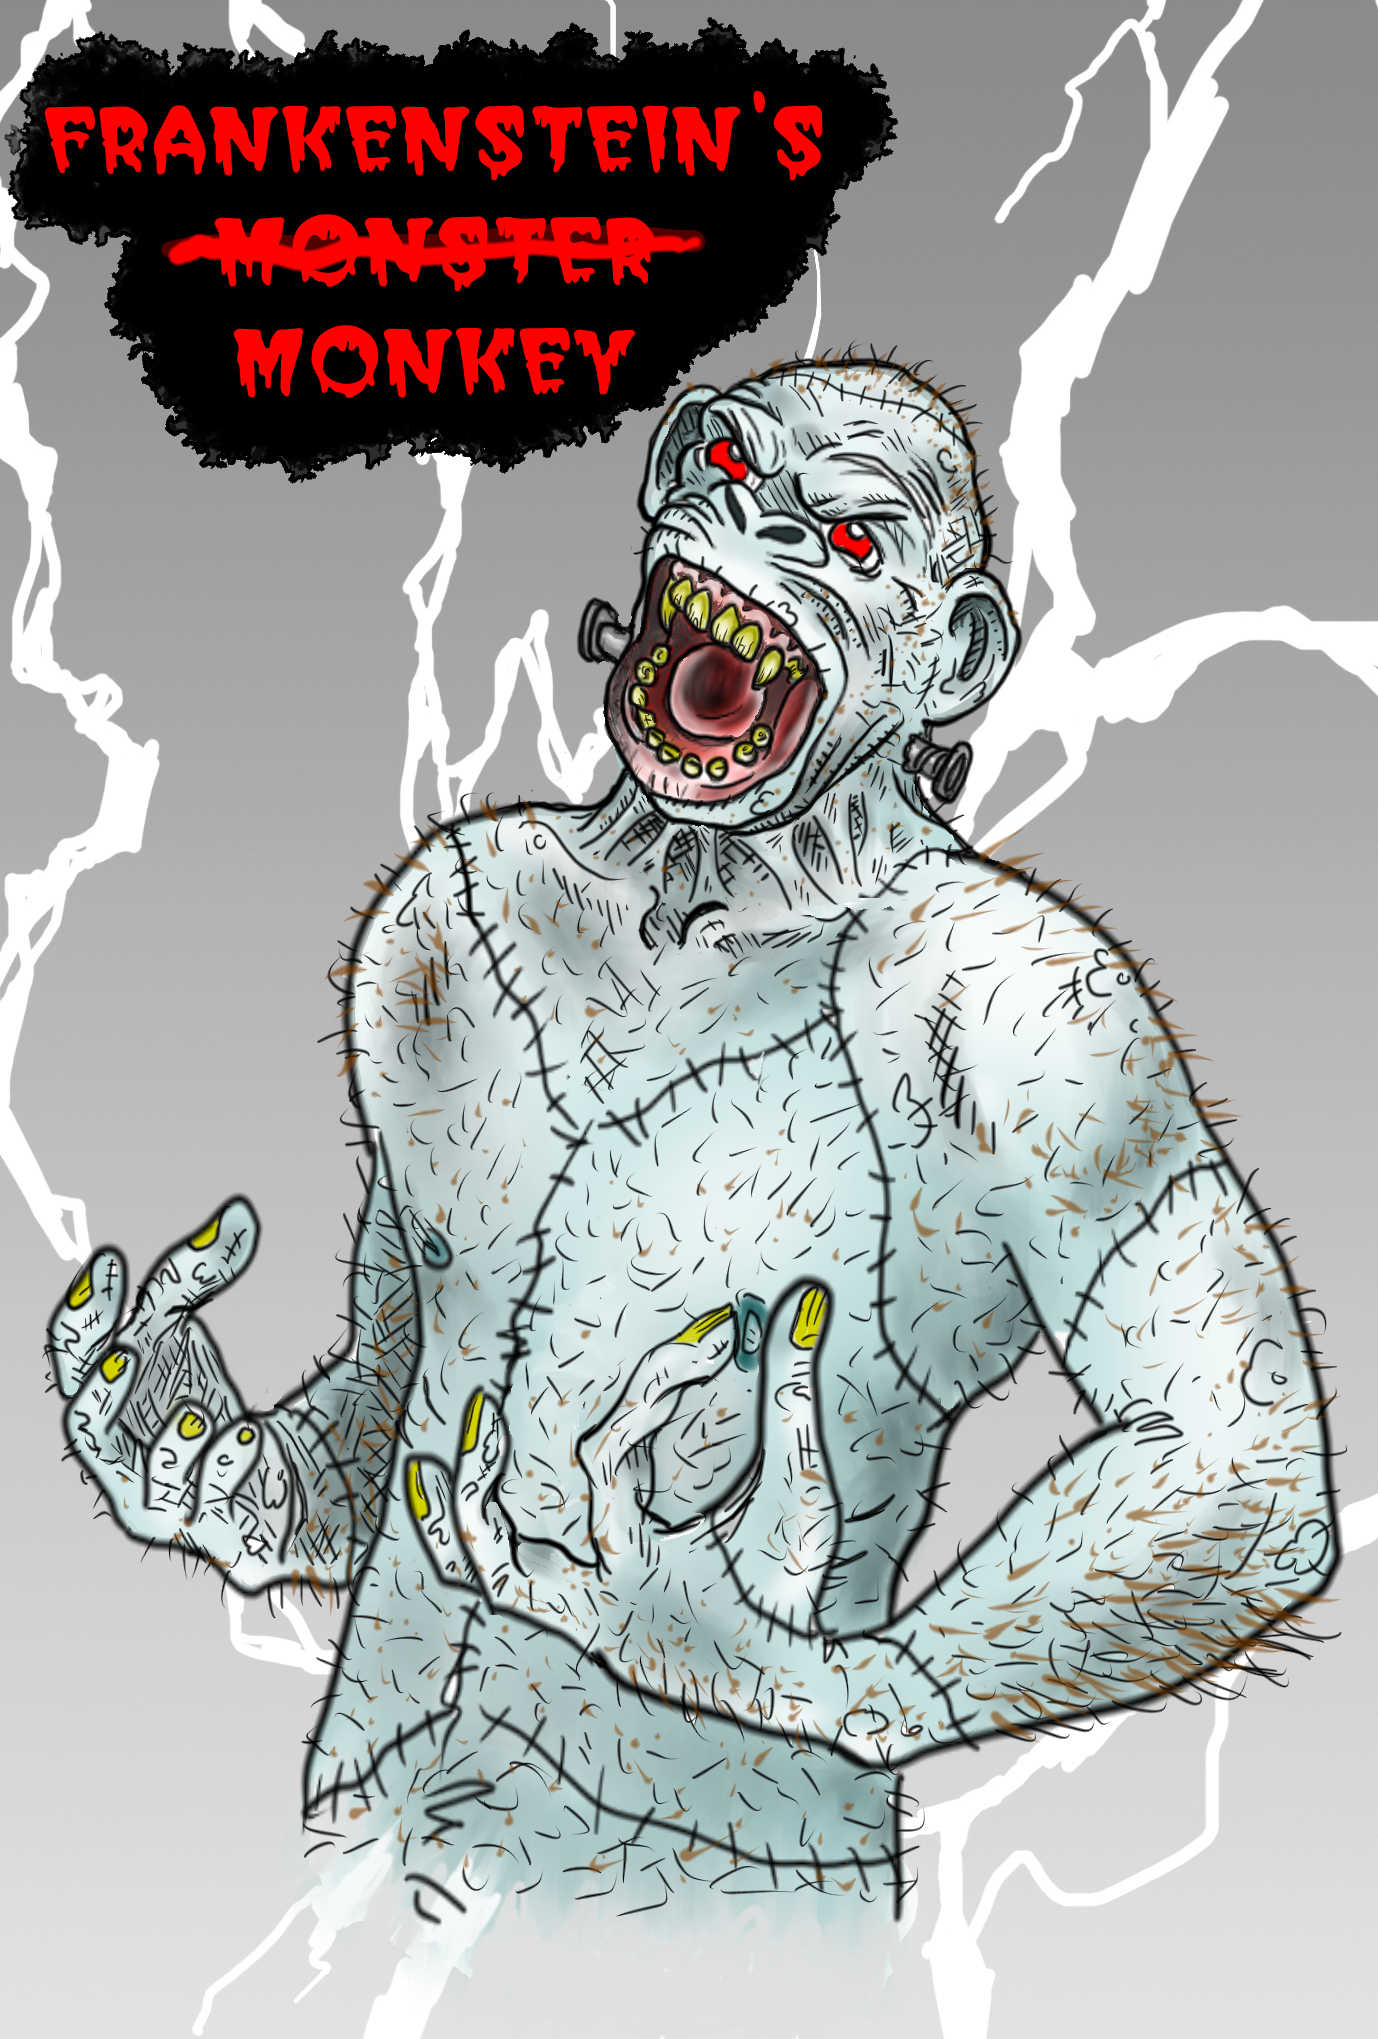 Frankensteins Monkey